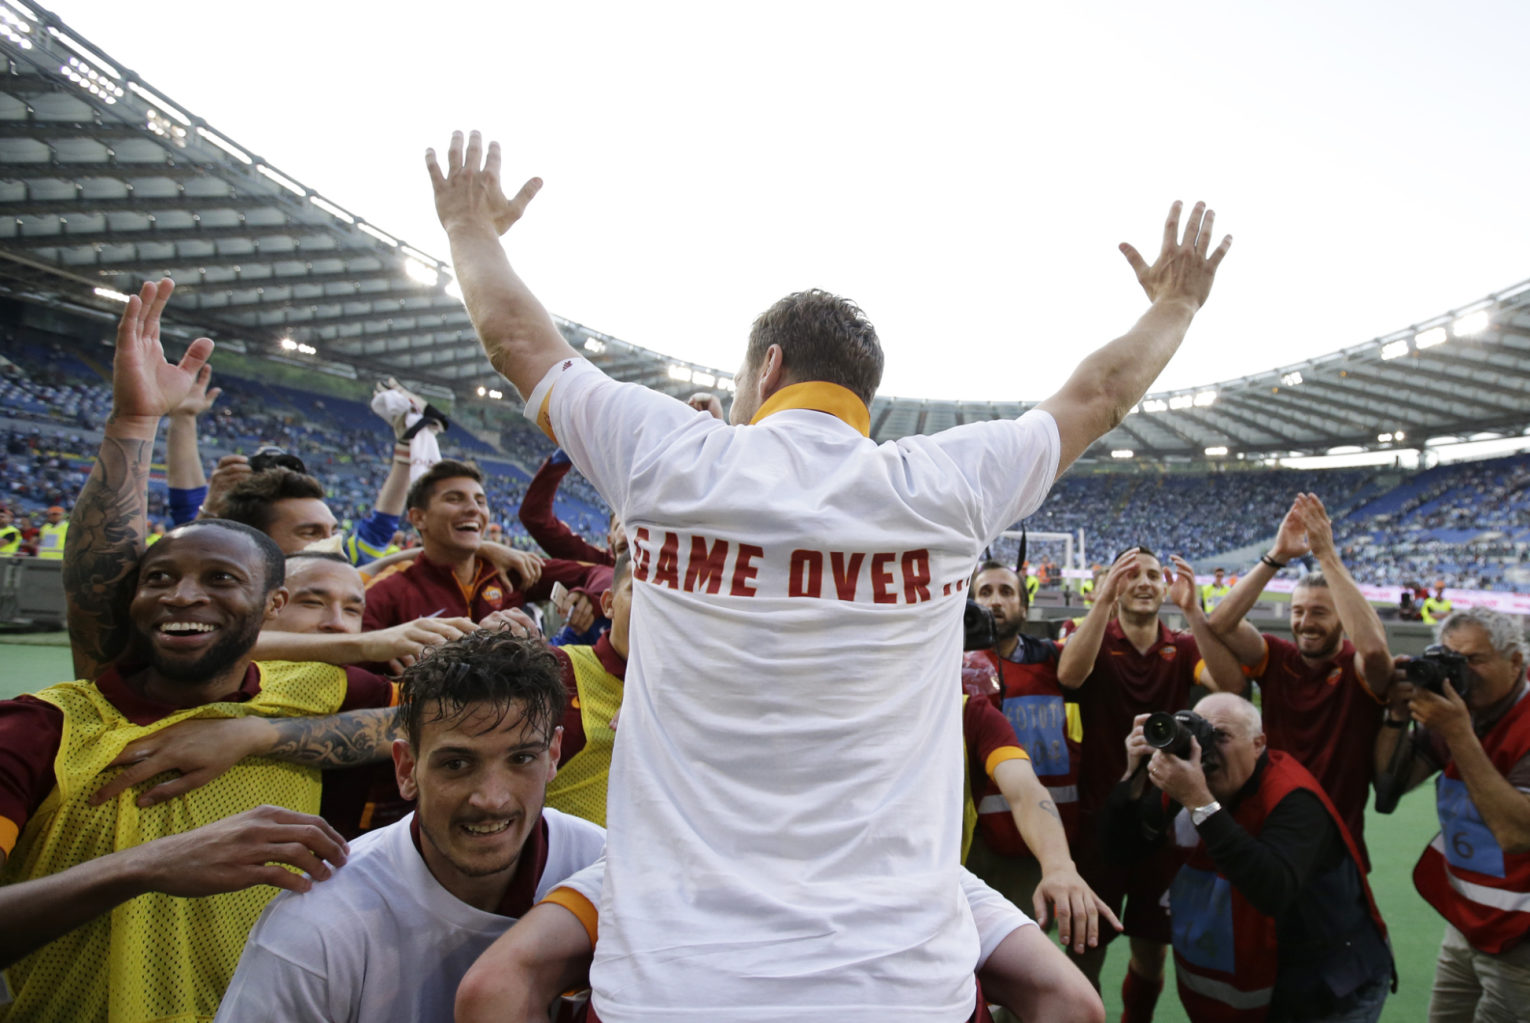 صرفا جهت اطلاع دوستان،: فرانچسکو توتی از دنیای فوتبال خداحافظی نکرده! اون لباسشم خطاب به باشگاه لاتزیو بود!